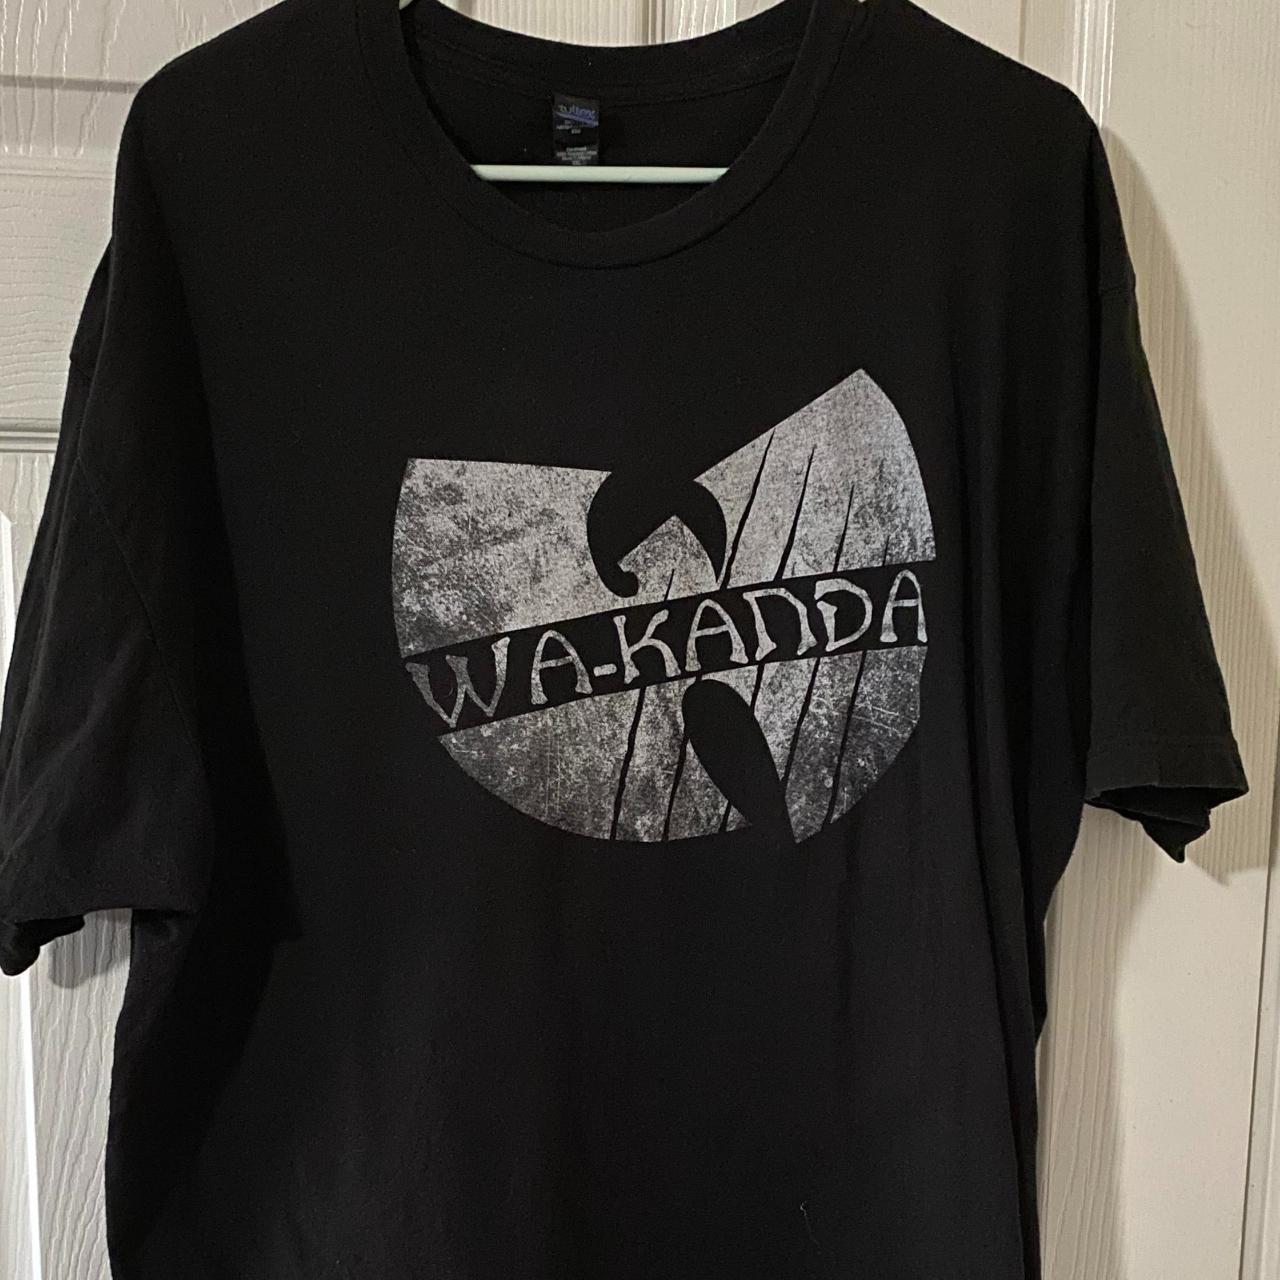 Product Image 1 - Marvel Black Panther Wakanda T-Shirt
Tultex